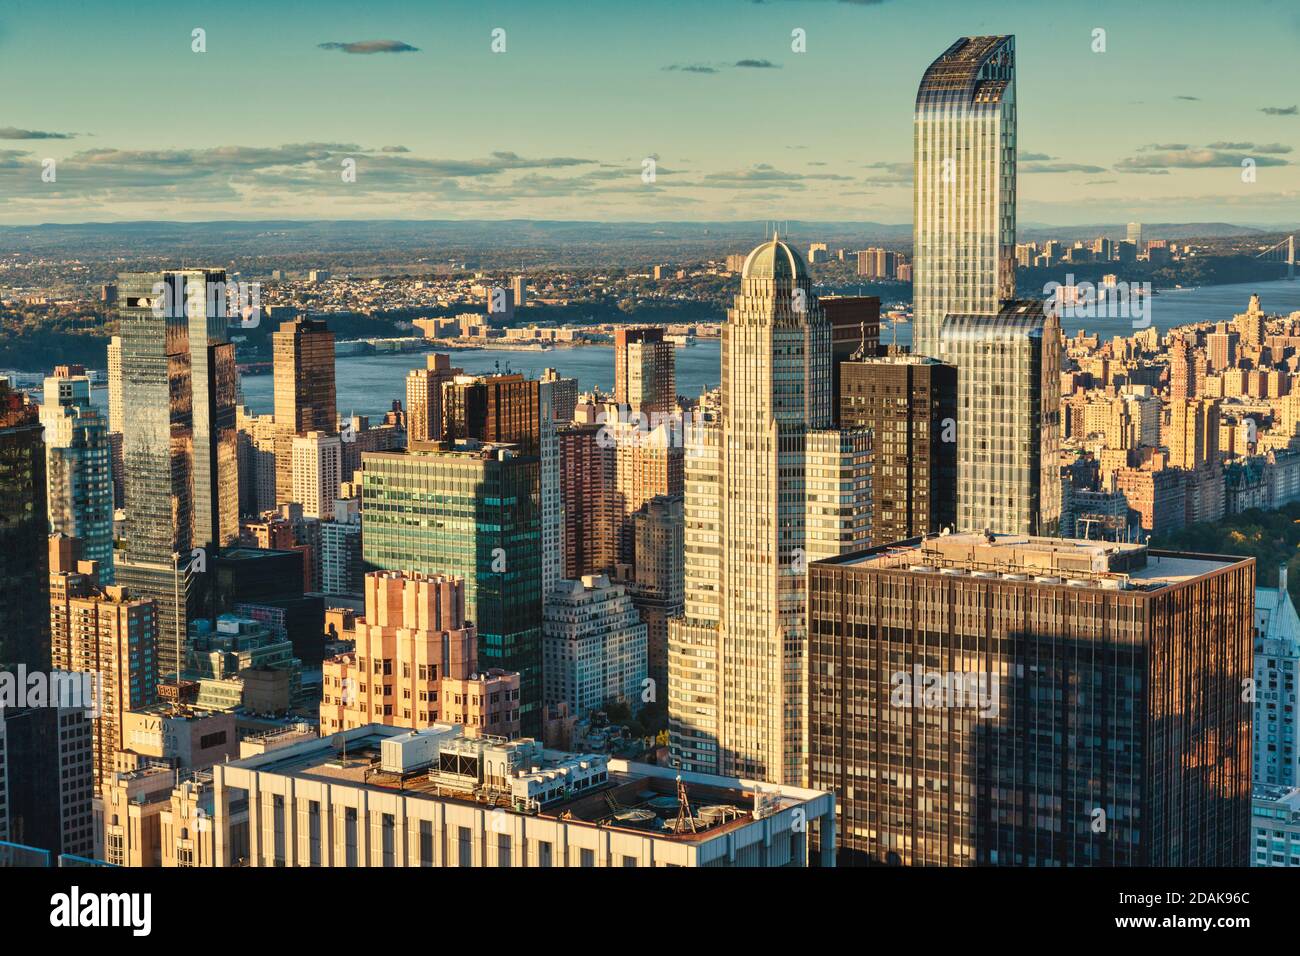 Manhattan view, New York City, New York State, United States of America. Stock Photo